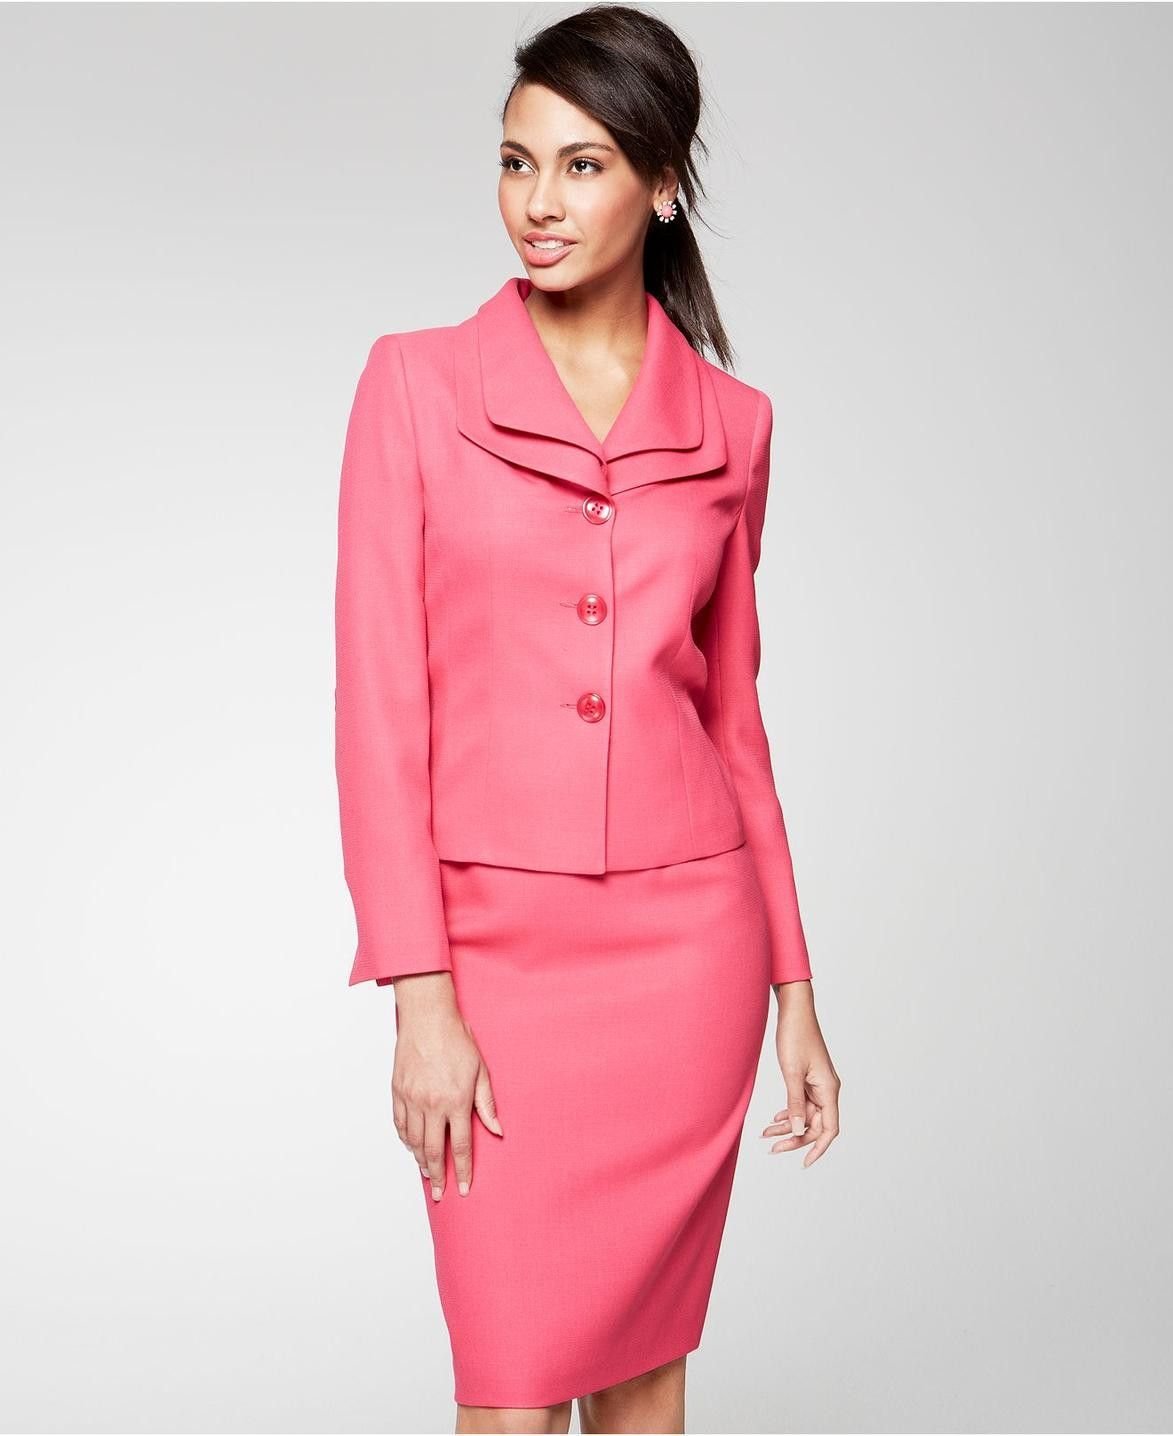 Розовый юбочный костюм. Розовый костюм женский с юбкой. Ярко розовый костюм с юбкой. Украшение для делового костюма розового цвета. Розовый костюм с юбкой